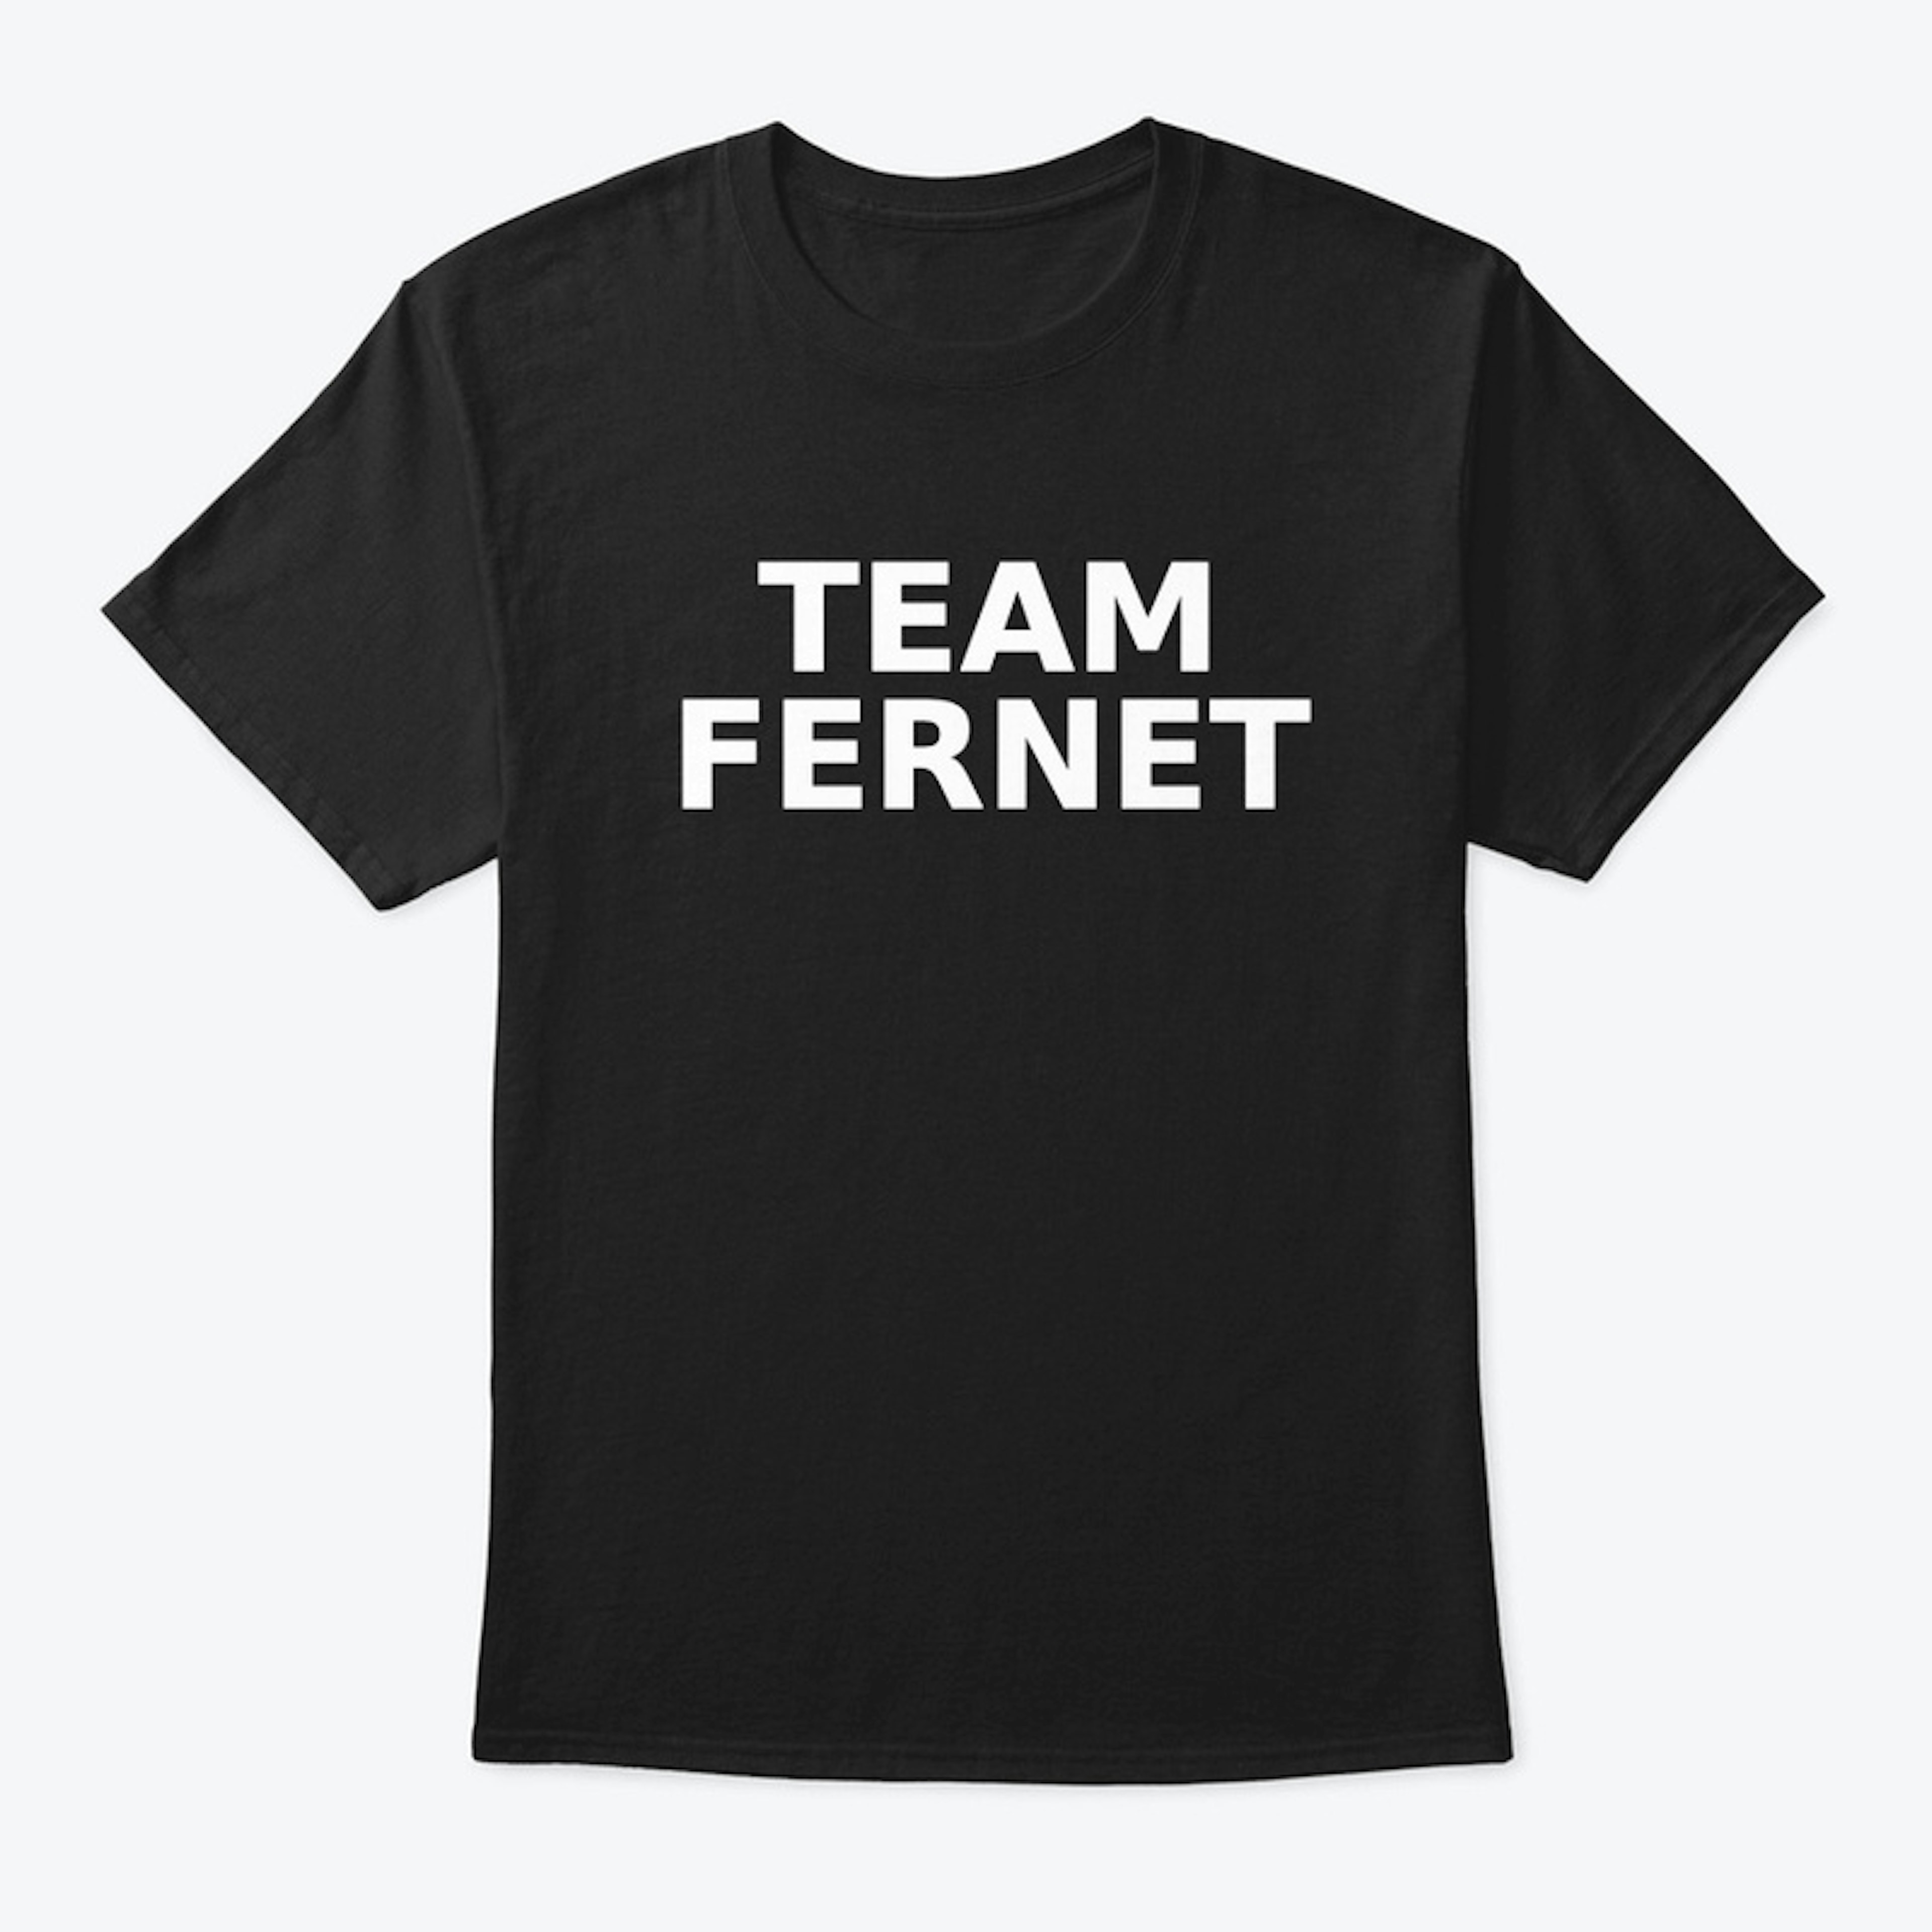 Team Fernet